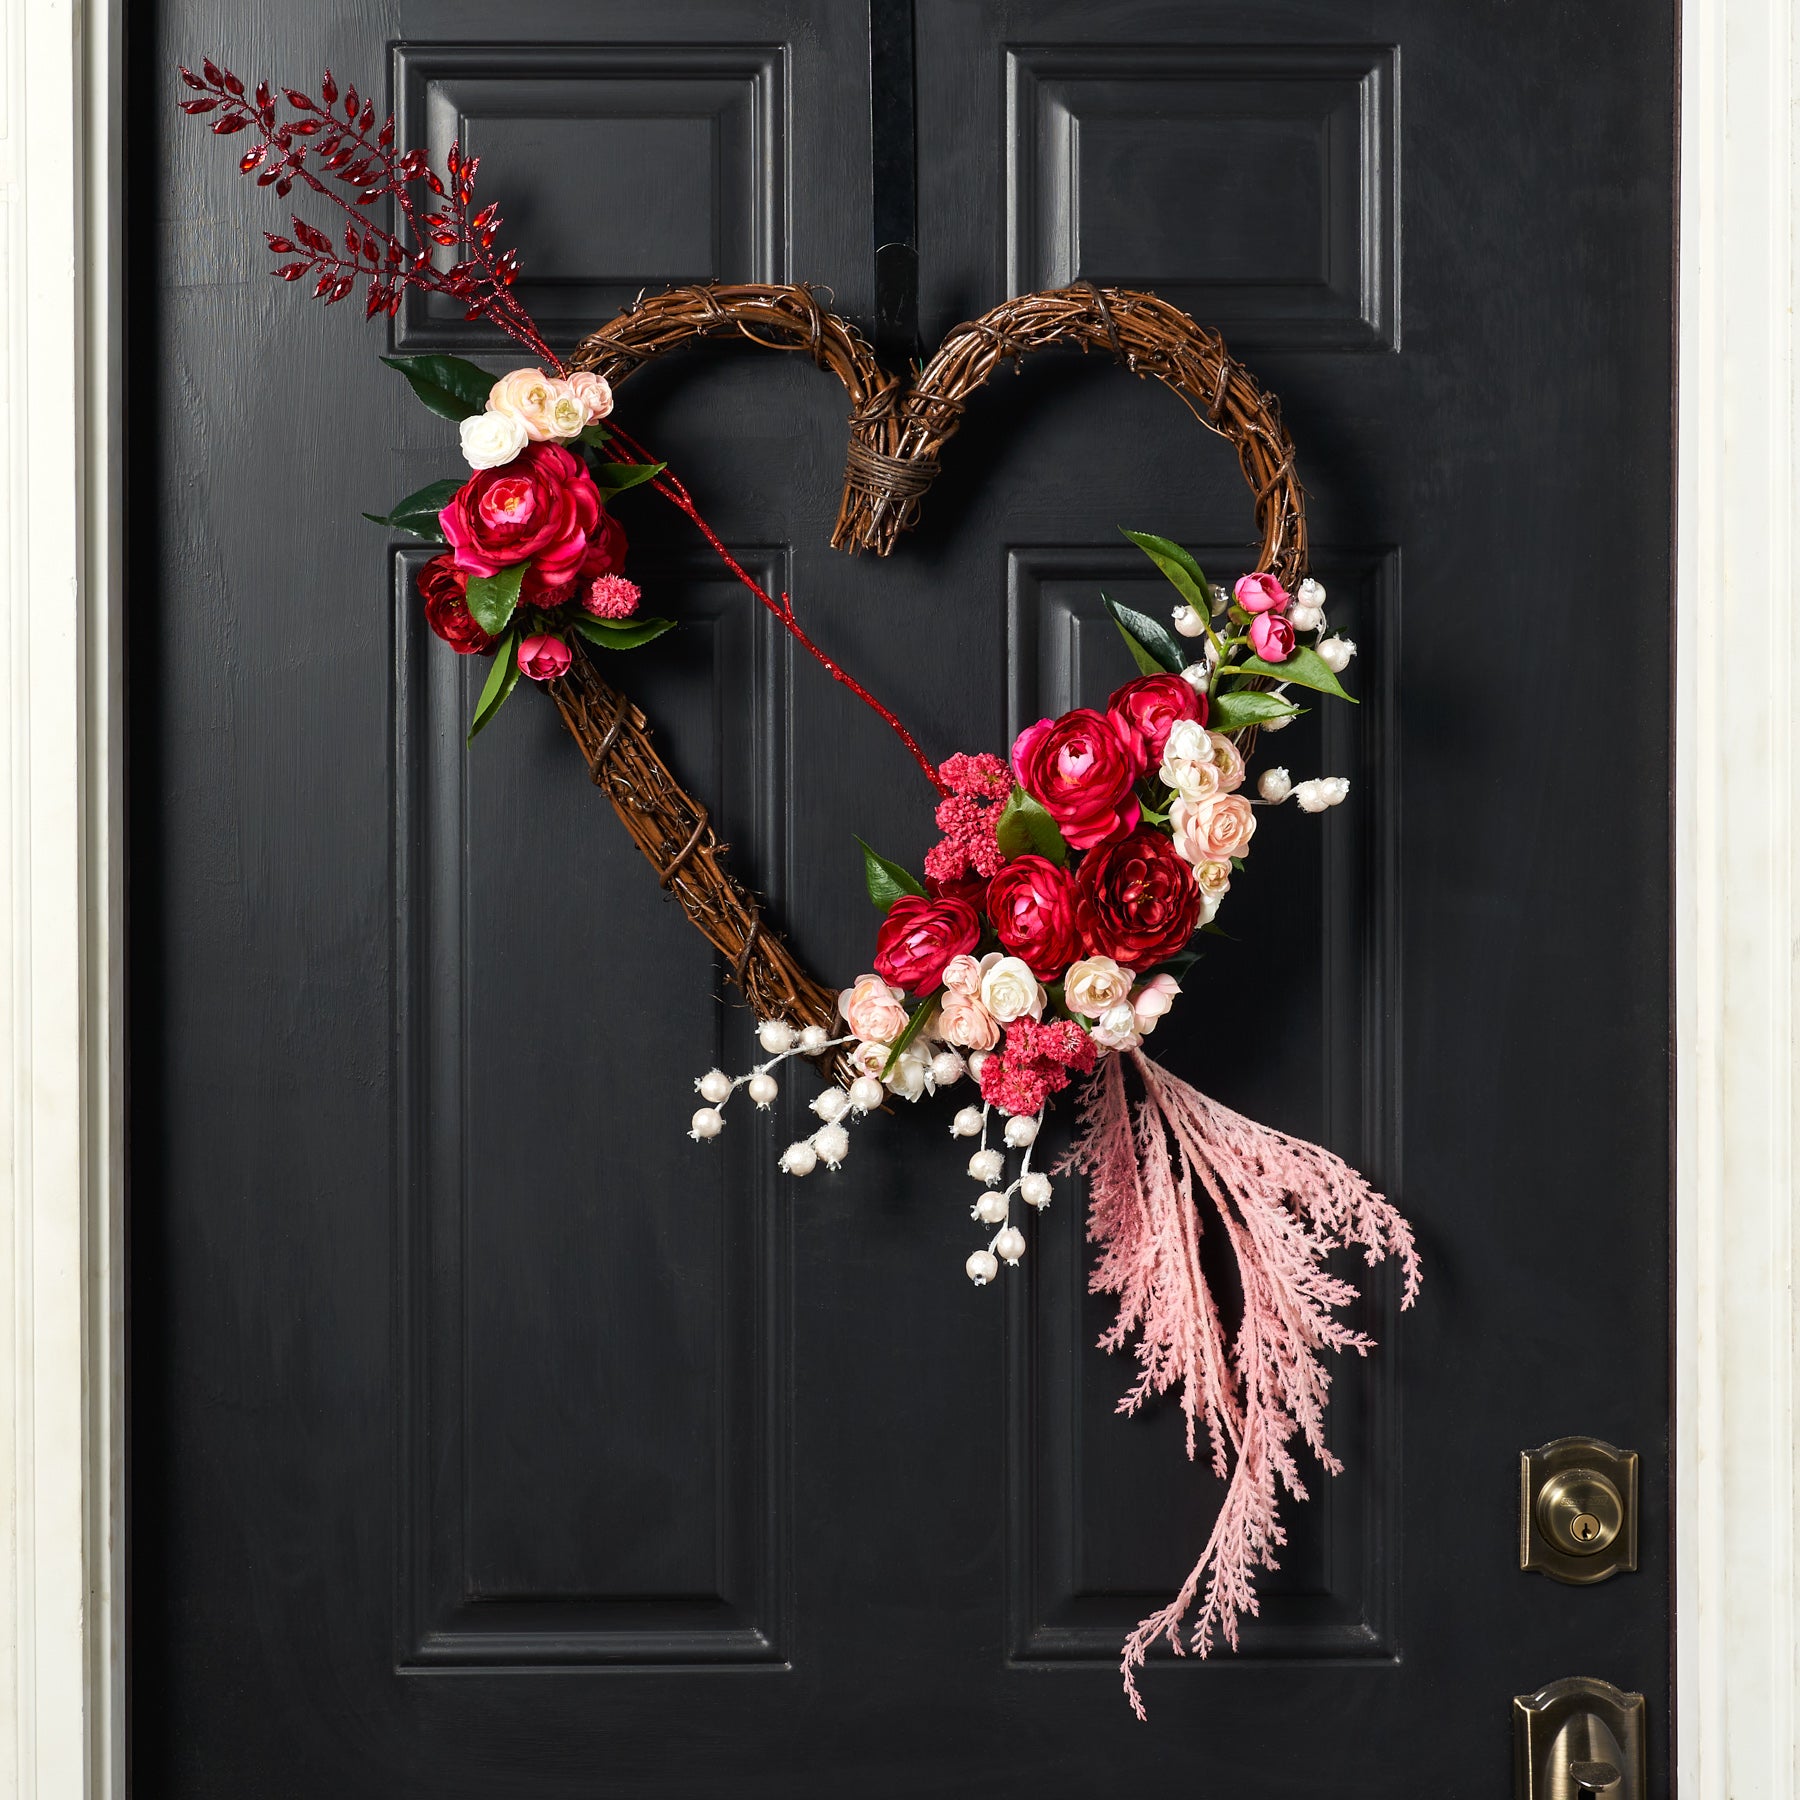 Lovestruck - Valentine's Day Heart Wreath with Pampas Grass & Pink